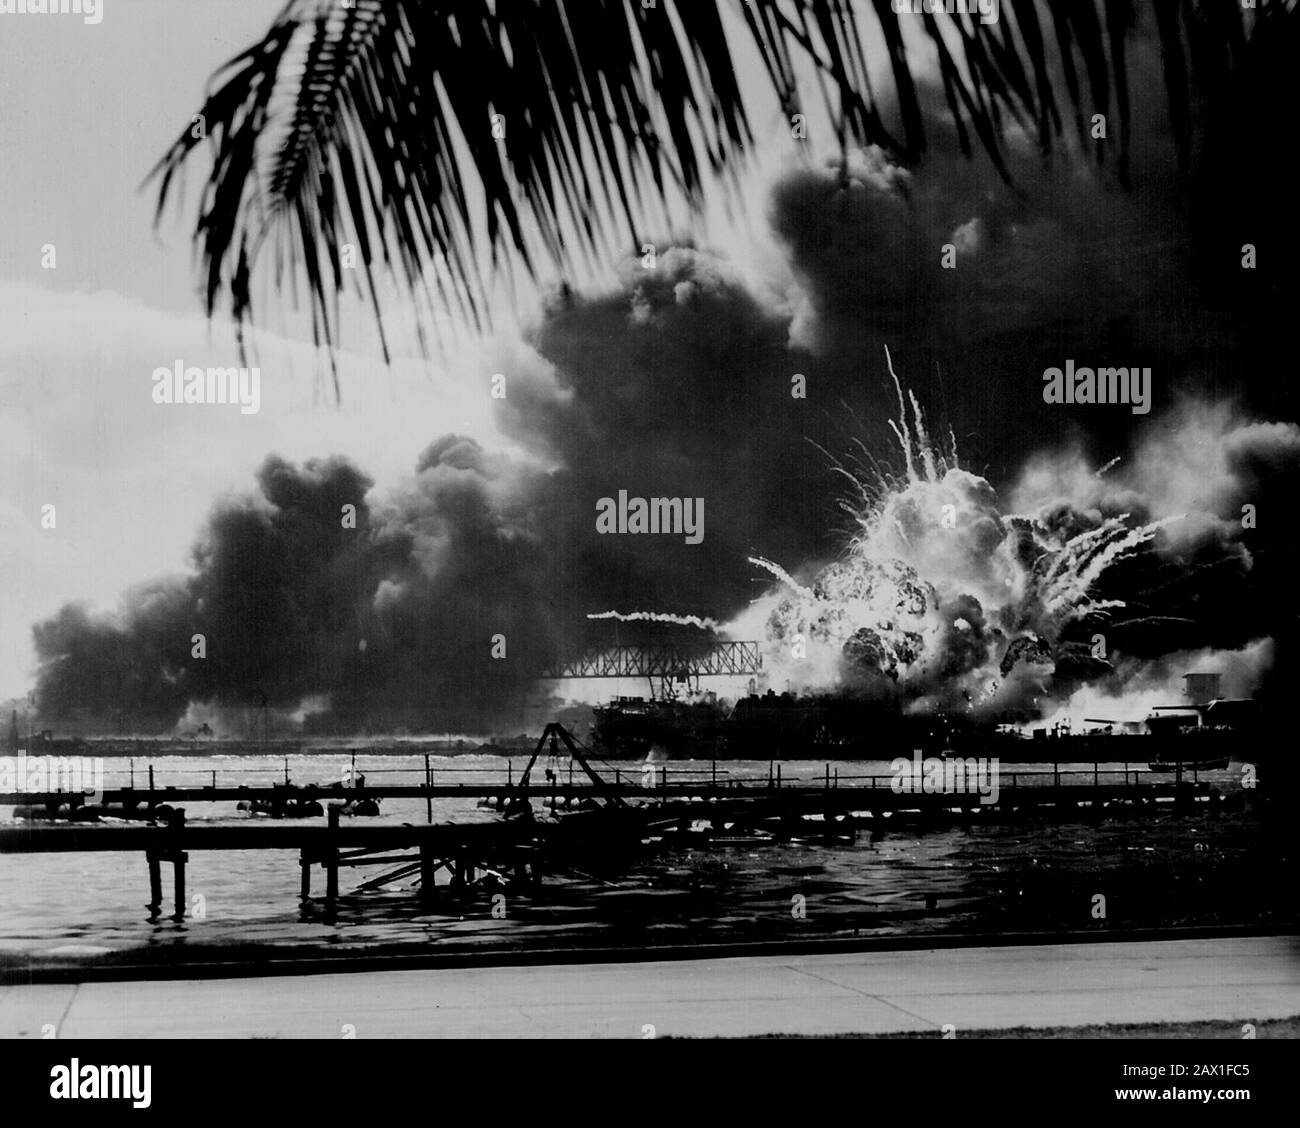 1941 , 7 de diciembre , EE.UU. : USS SHAW explotando durante la incursión japonesa en Pearl Harbor . 7 De Diciembre, 1941 - SEGUNDA GUERRA MUNDIAL - Segunda Guerra Mundial - SEGUNDA GUERRA MONDIALE - foto storiche storica - FOTOS DE HISTORIA - Stati Uniti d' America - BATTAGLIA - bombardeo - nave - Marina - Marina - esplosione - explosión - bomba - bomba - mare - mar - attacco aereo - EE.UU - GIAPPONE - GUERRA DEL PACÍFICO - OCEANO - OCÉANO PACÍFICO - BATTAGLIA - BATALLA ---- ARCHIVIO GBB Foto de stock